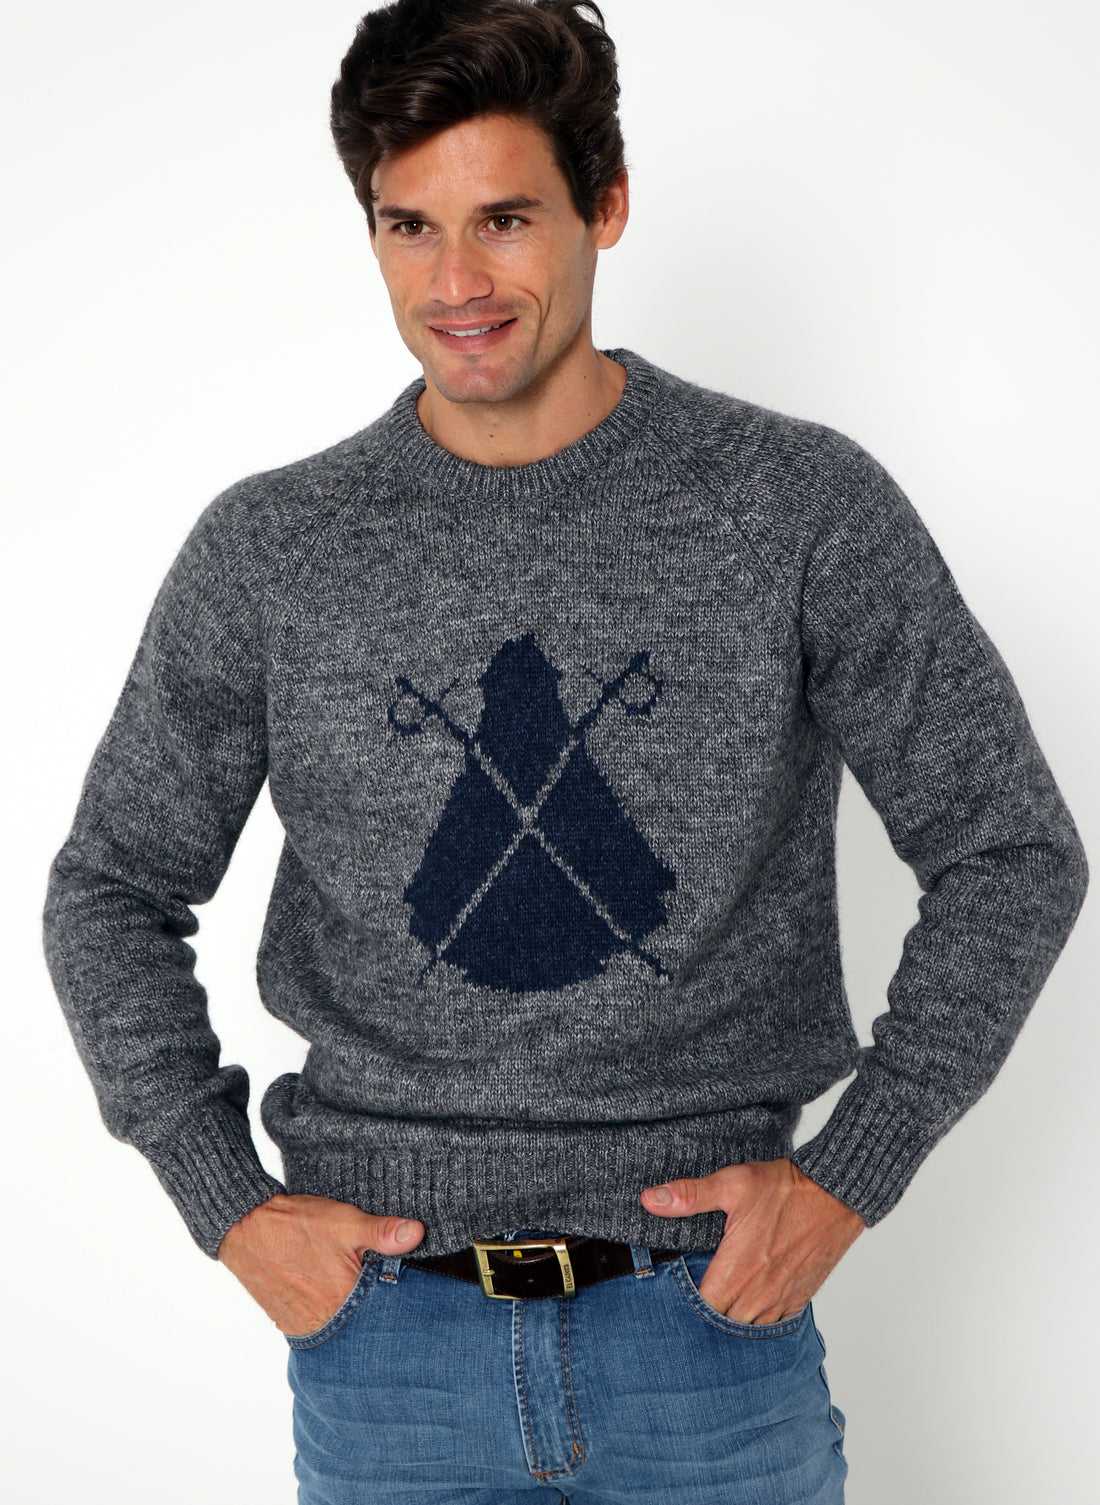 Grijze Intarsia Navy Cape-sweater voor heren